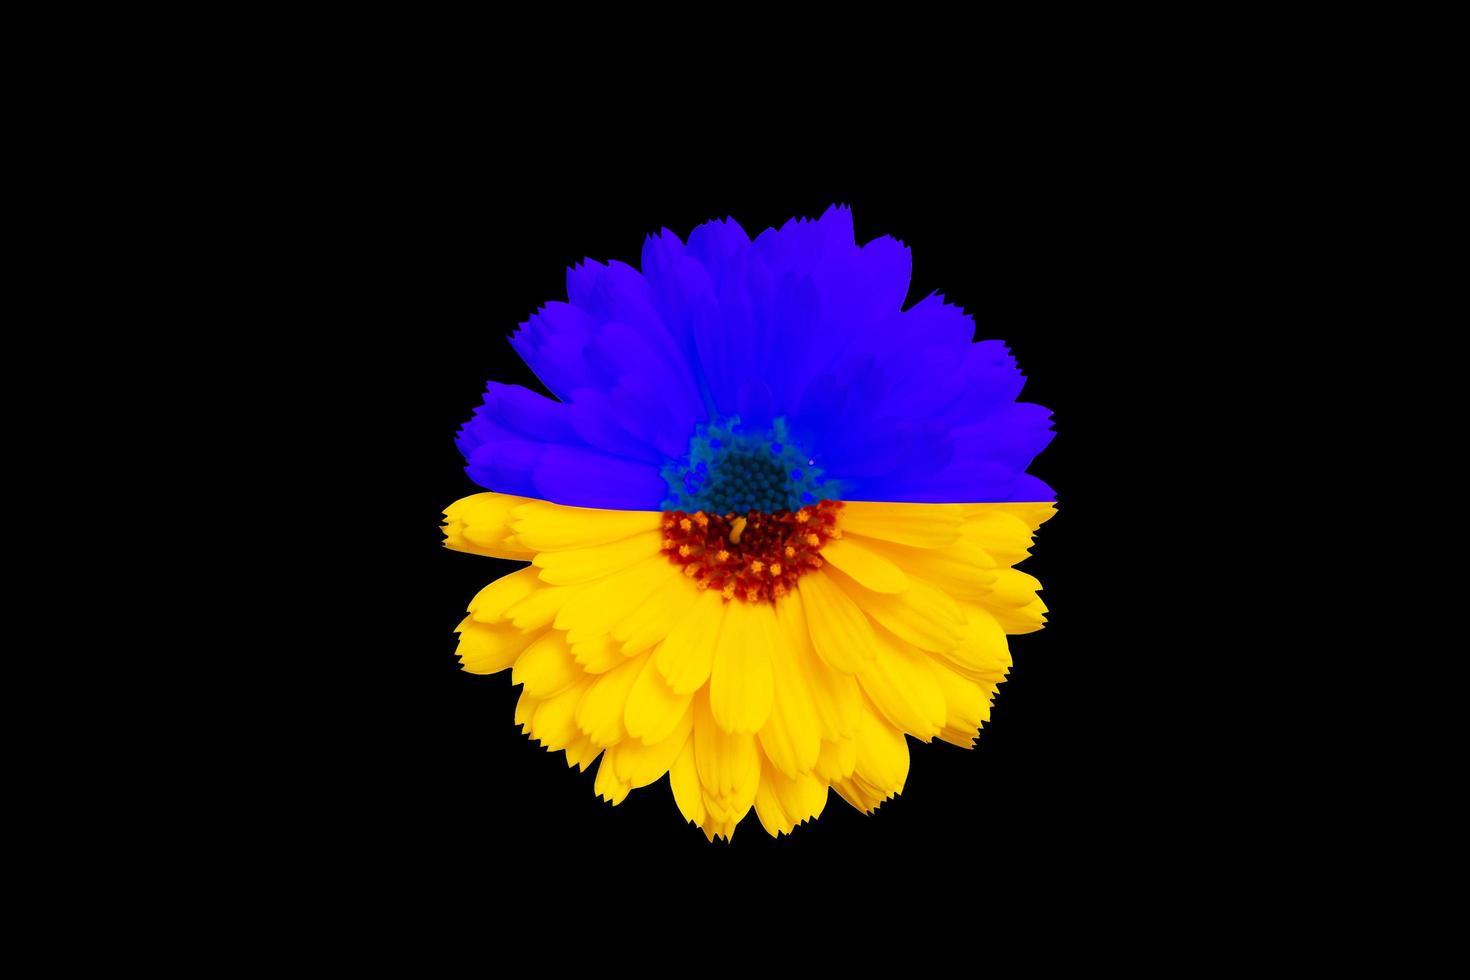 blomman är tonad med den gulblå färgen på den ukrainska flaggan på en svart bakgrund foto